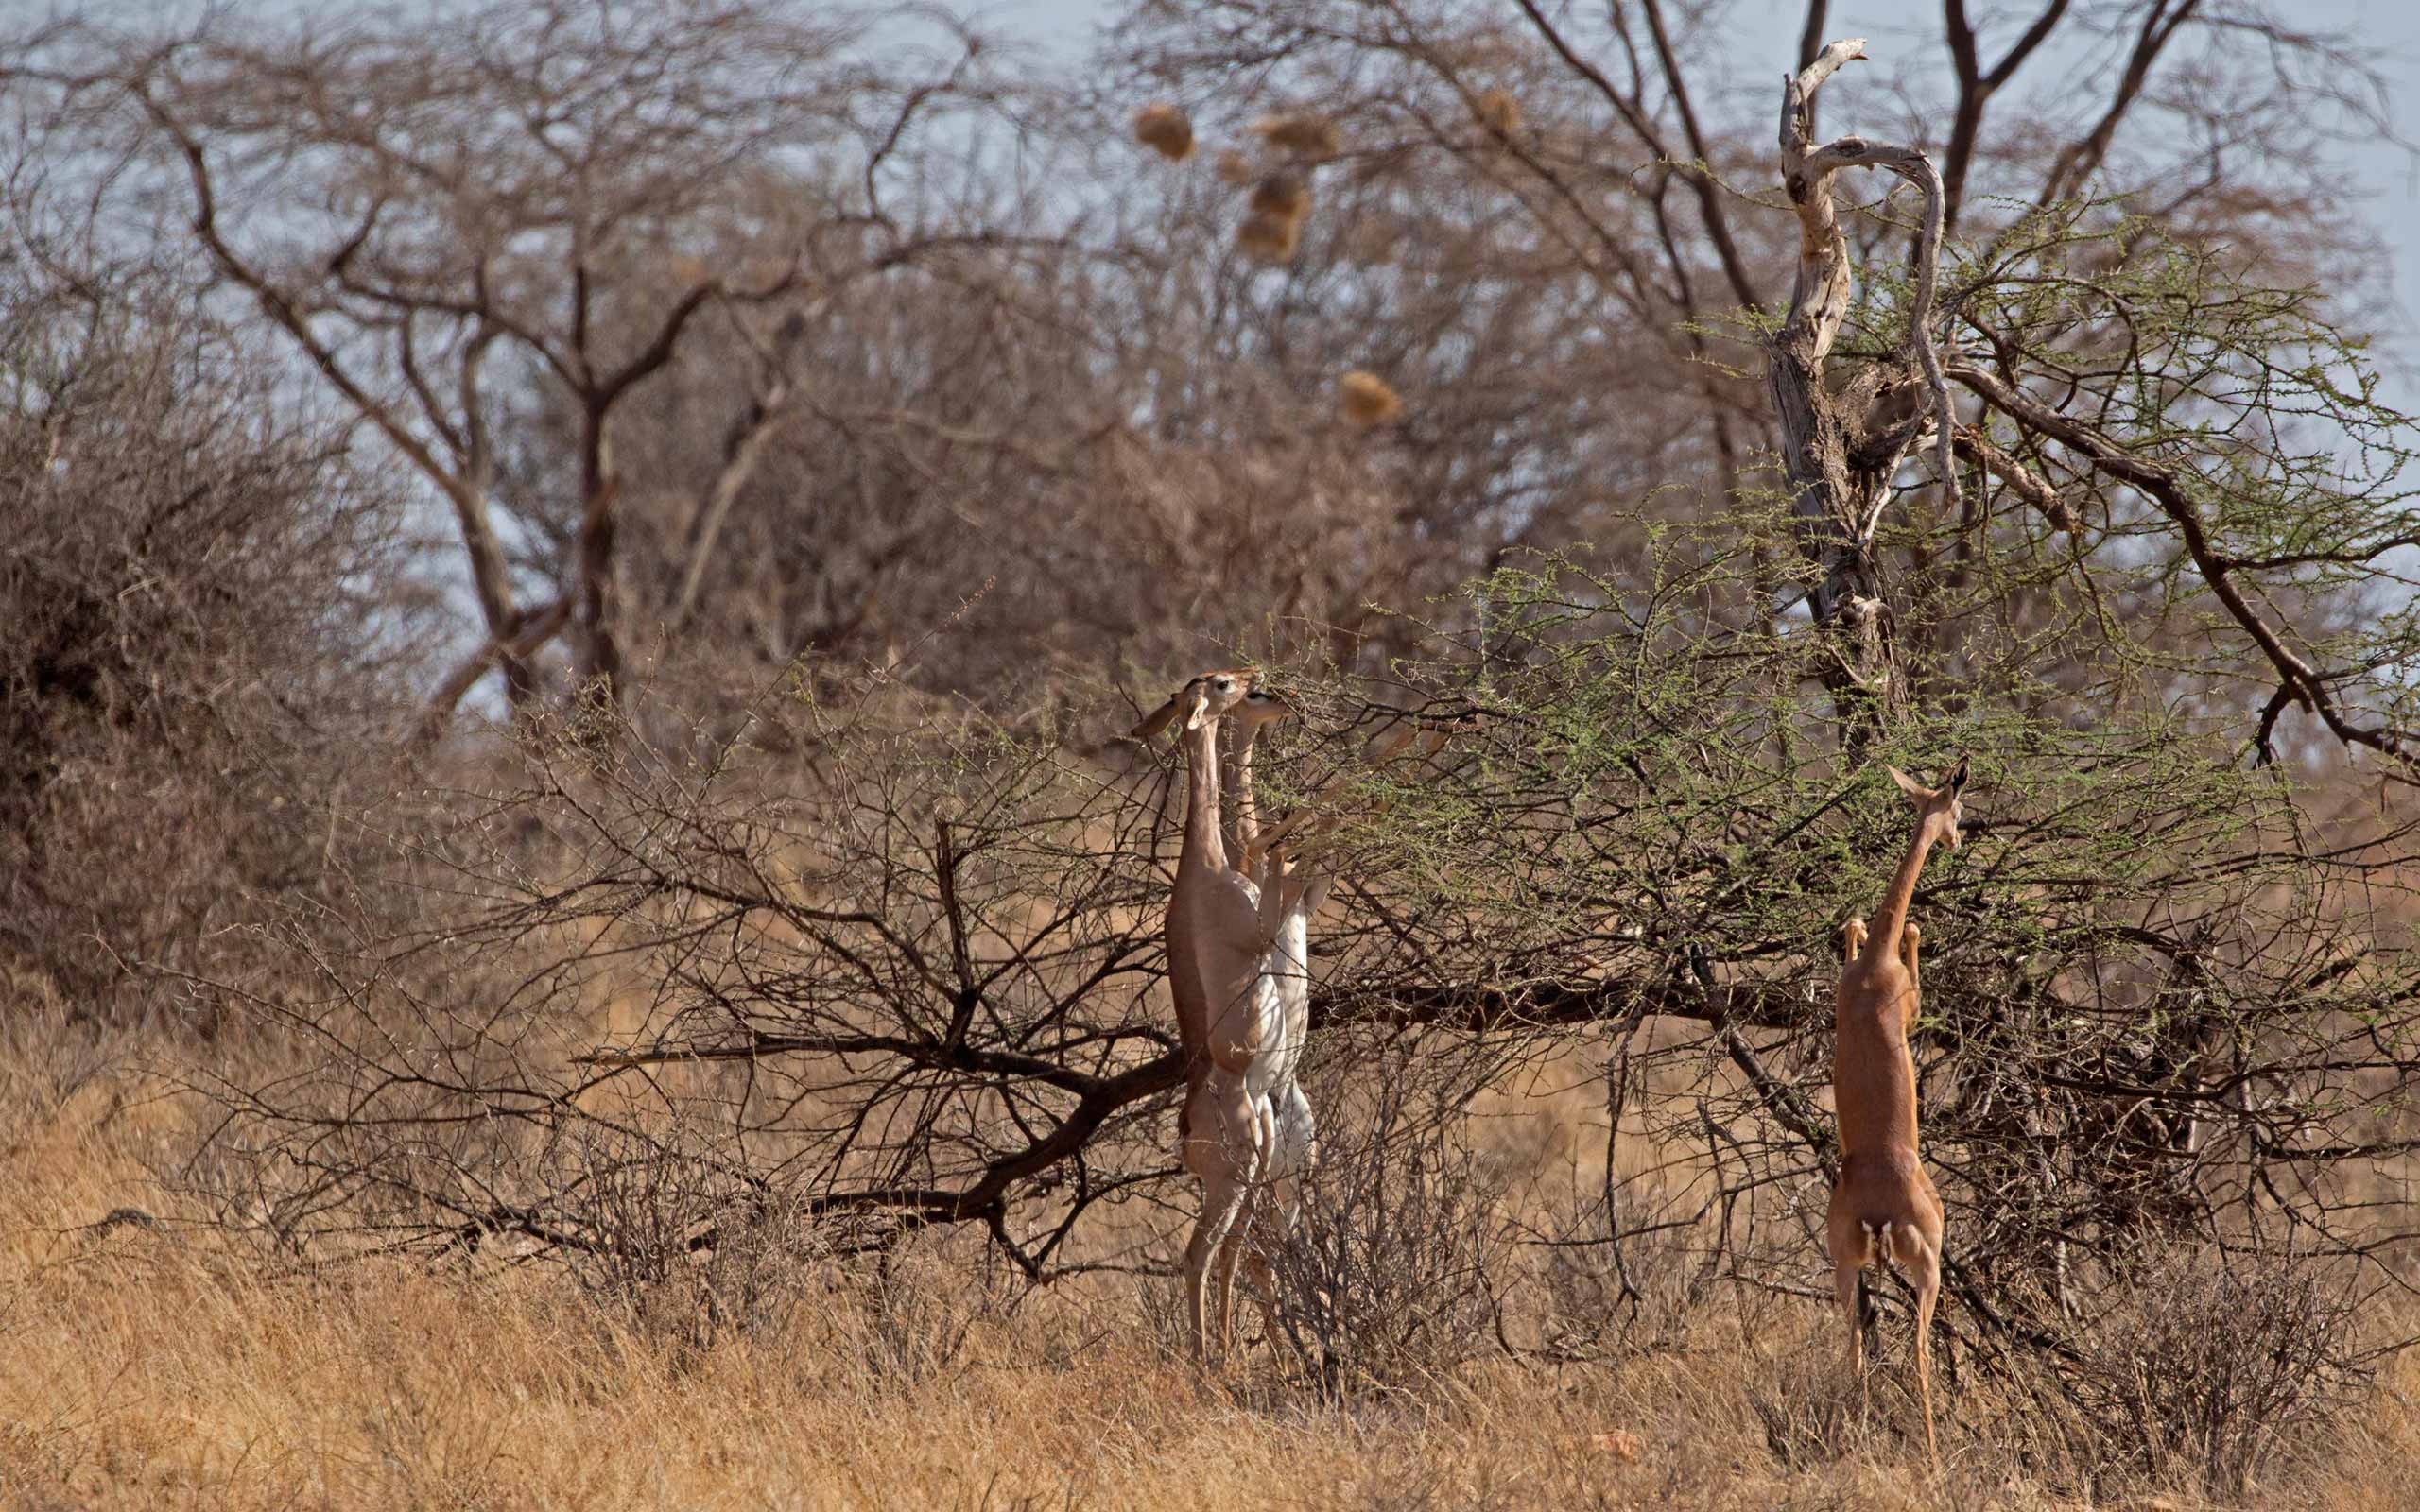 enkosi-africa-safari-kenya-samburu-elephant-bedroom-camp-gerenuk